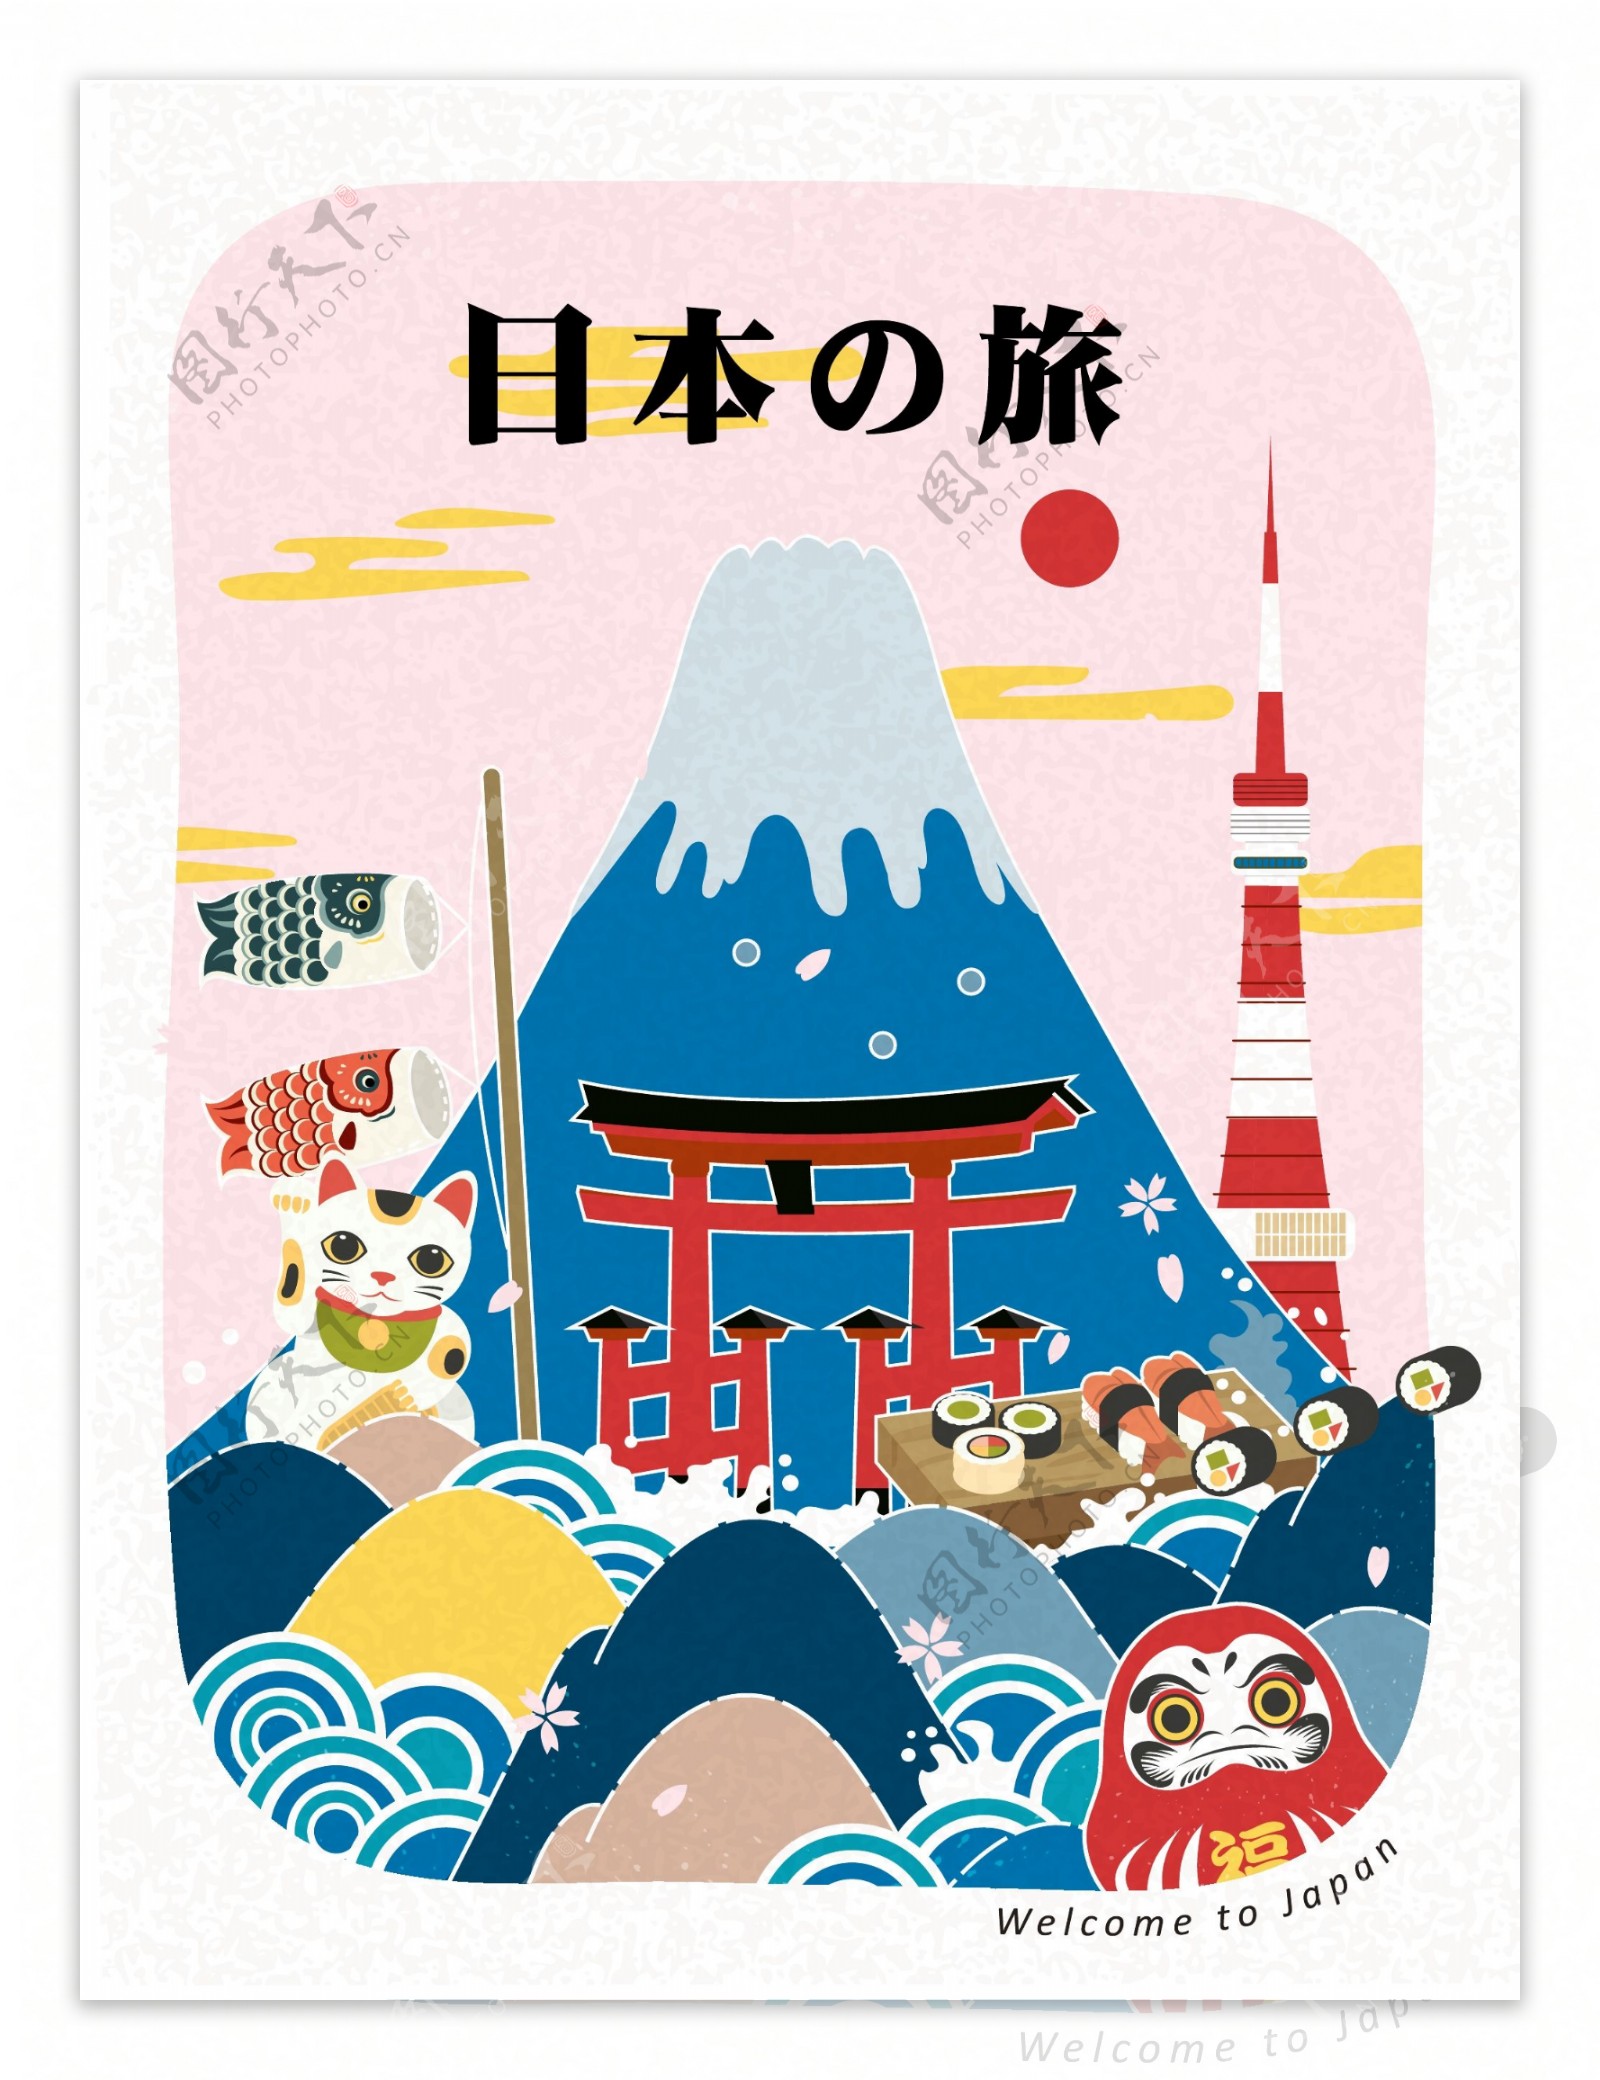 特色日本旅行插画